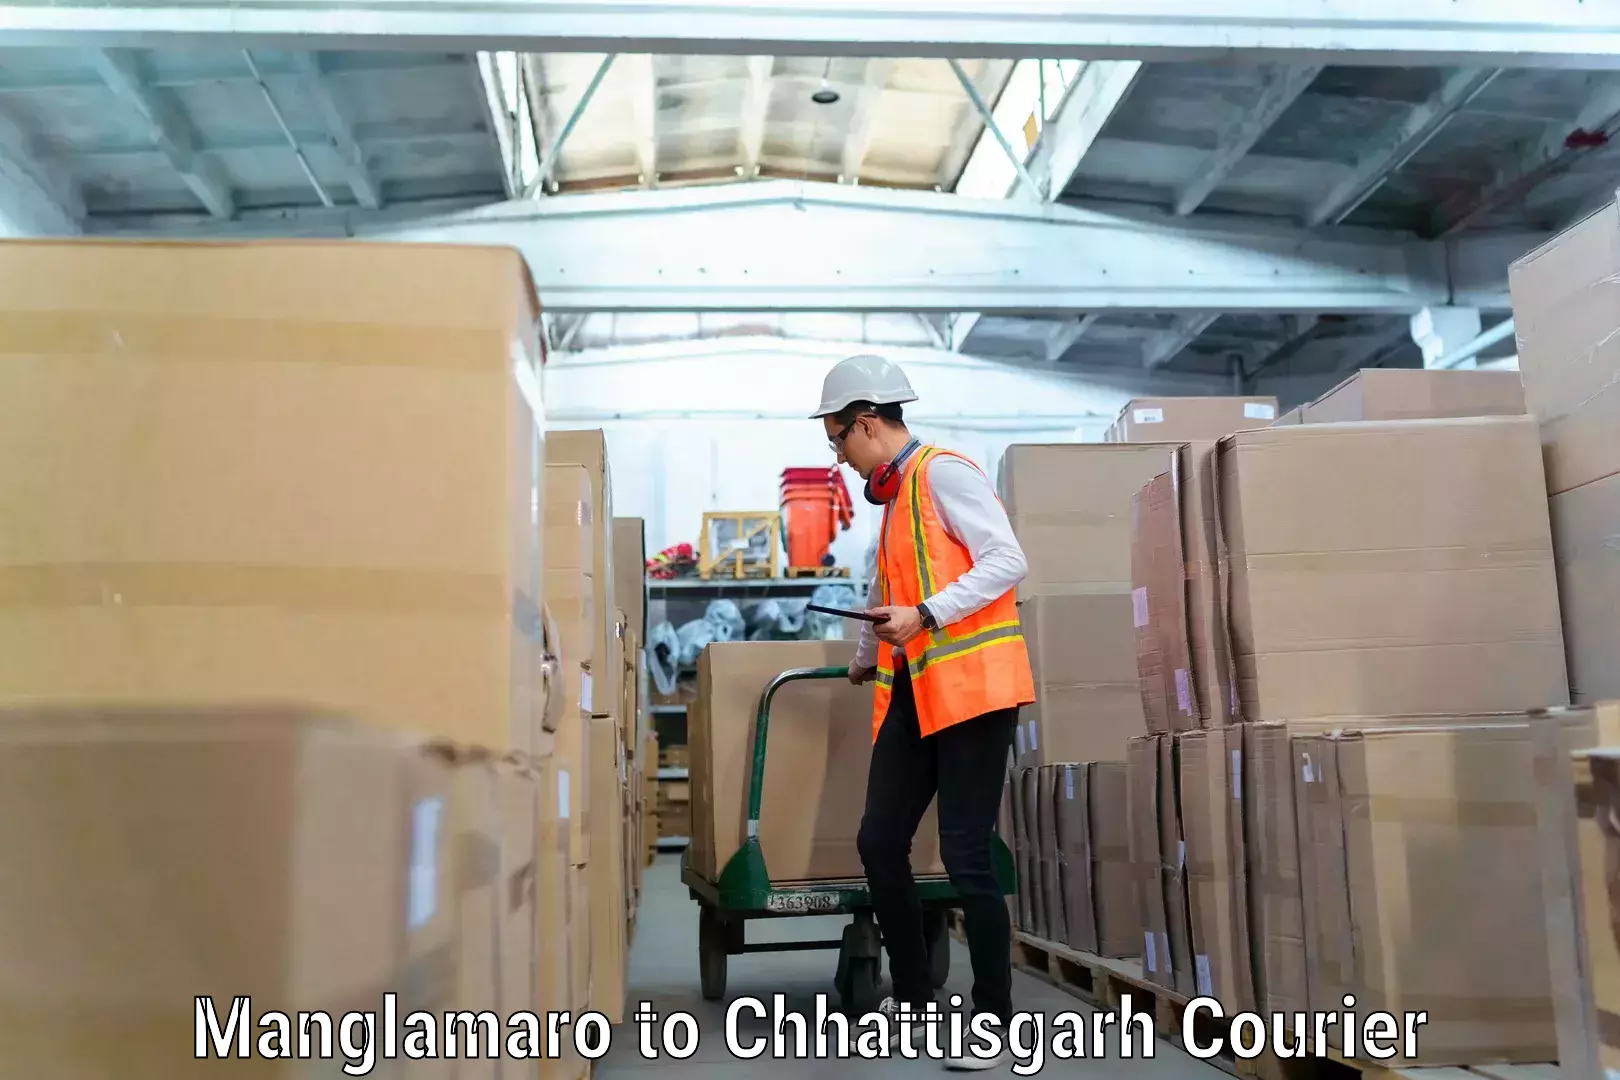 Expert furniture transport Manglamaro to Chhattisgarh